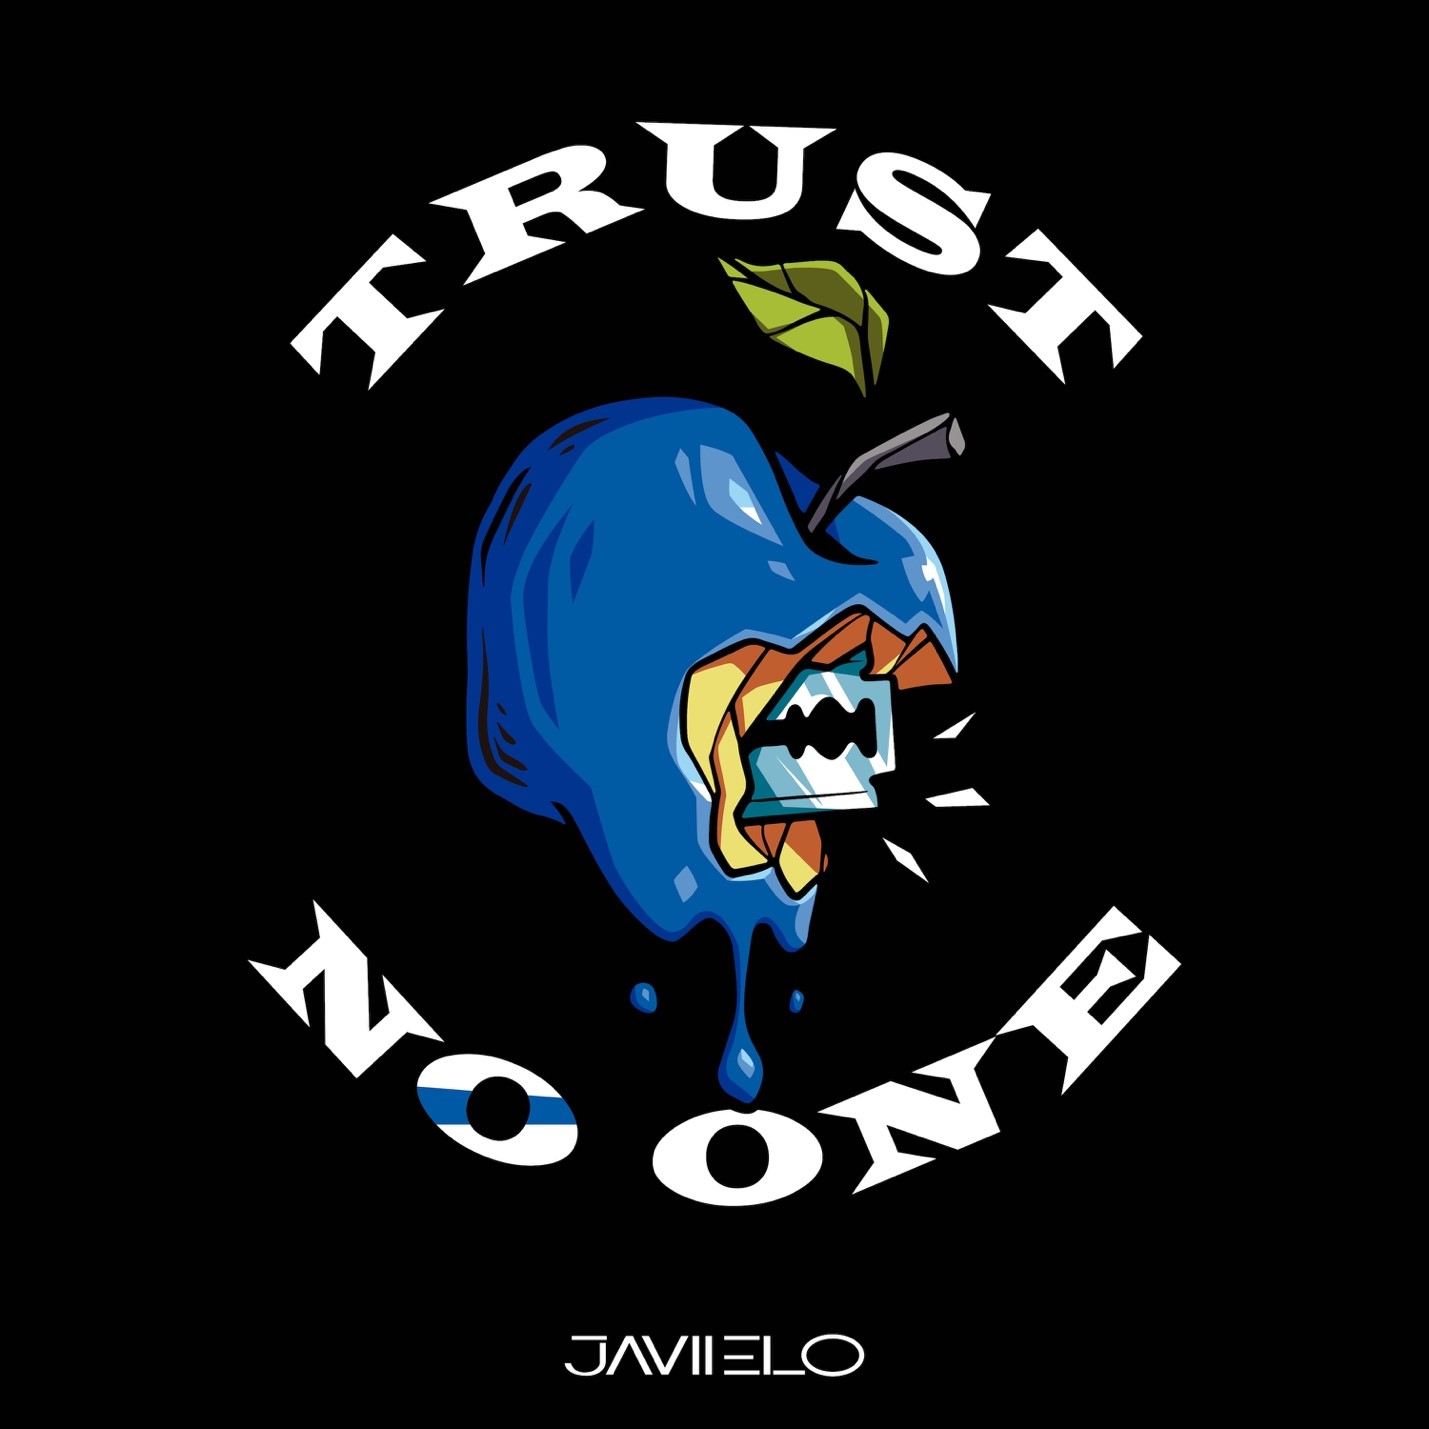 Javiielo viene a marcar la diferencia con el ep más versatil del año “Trust no one”